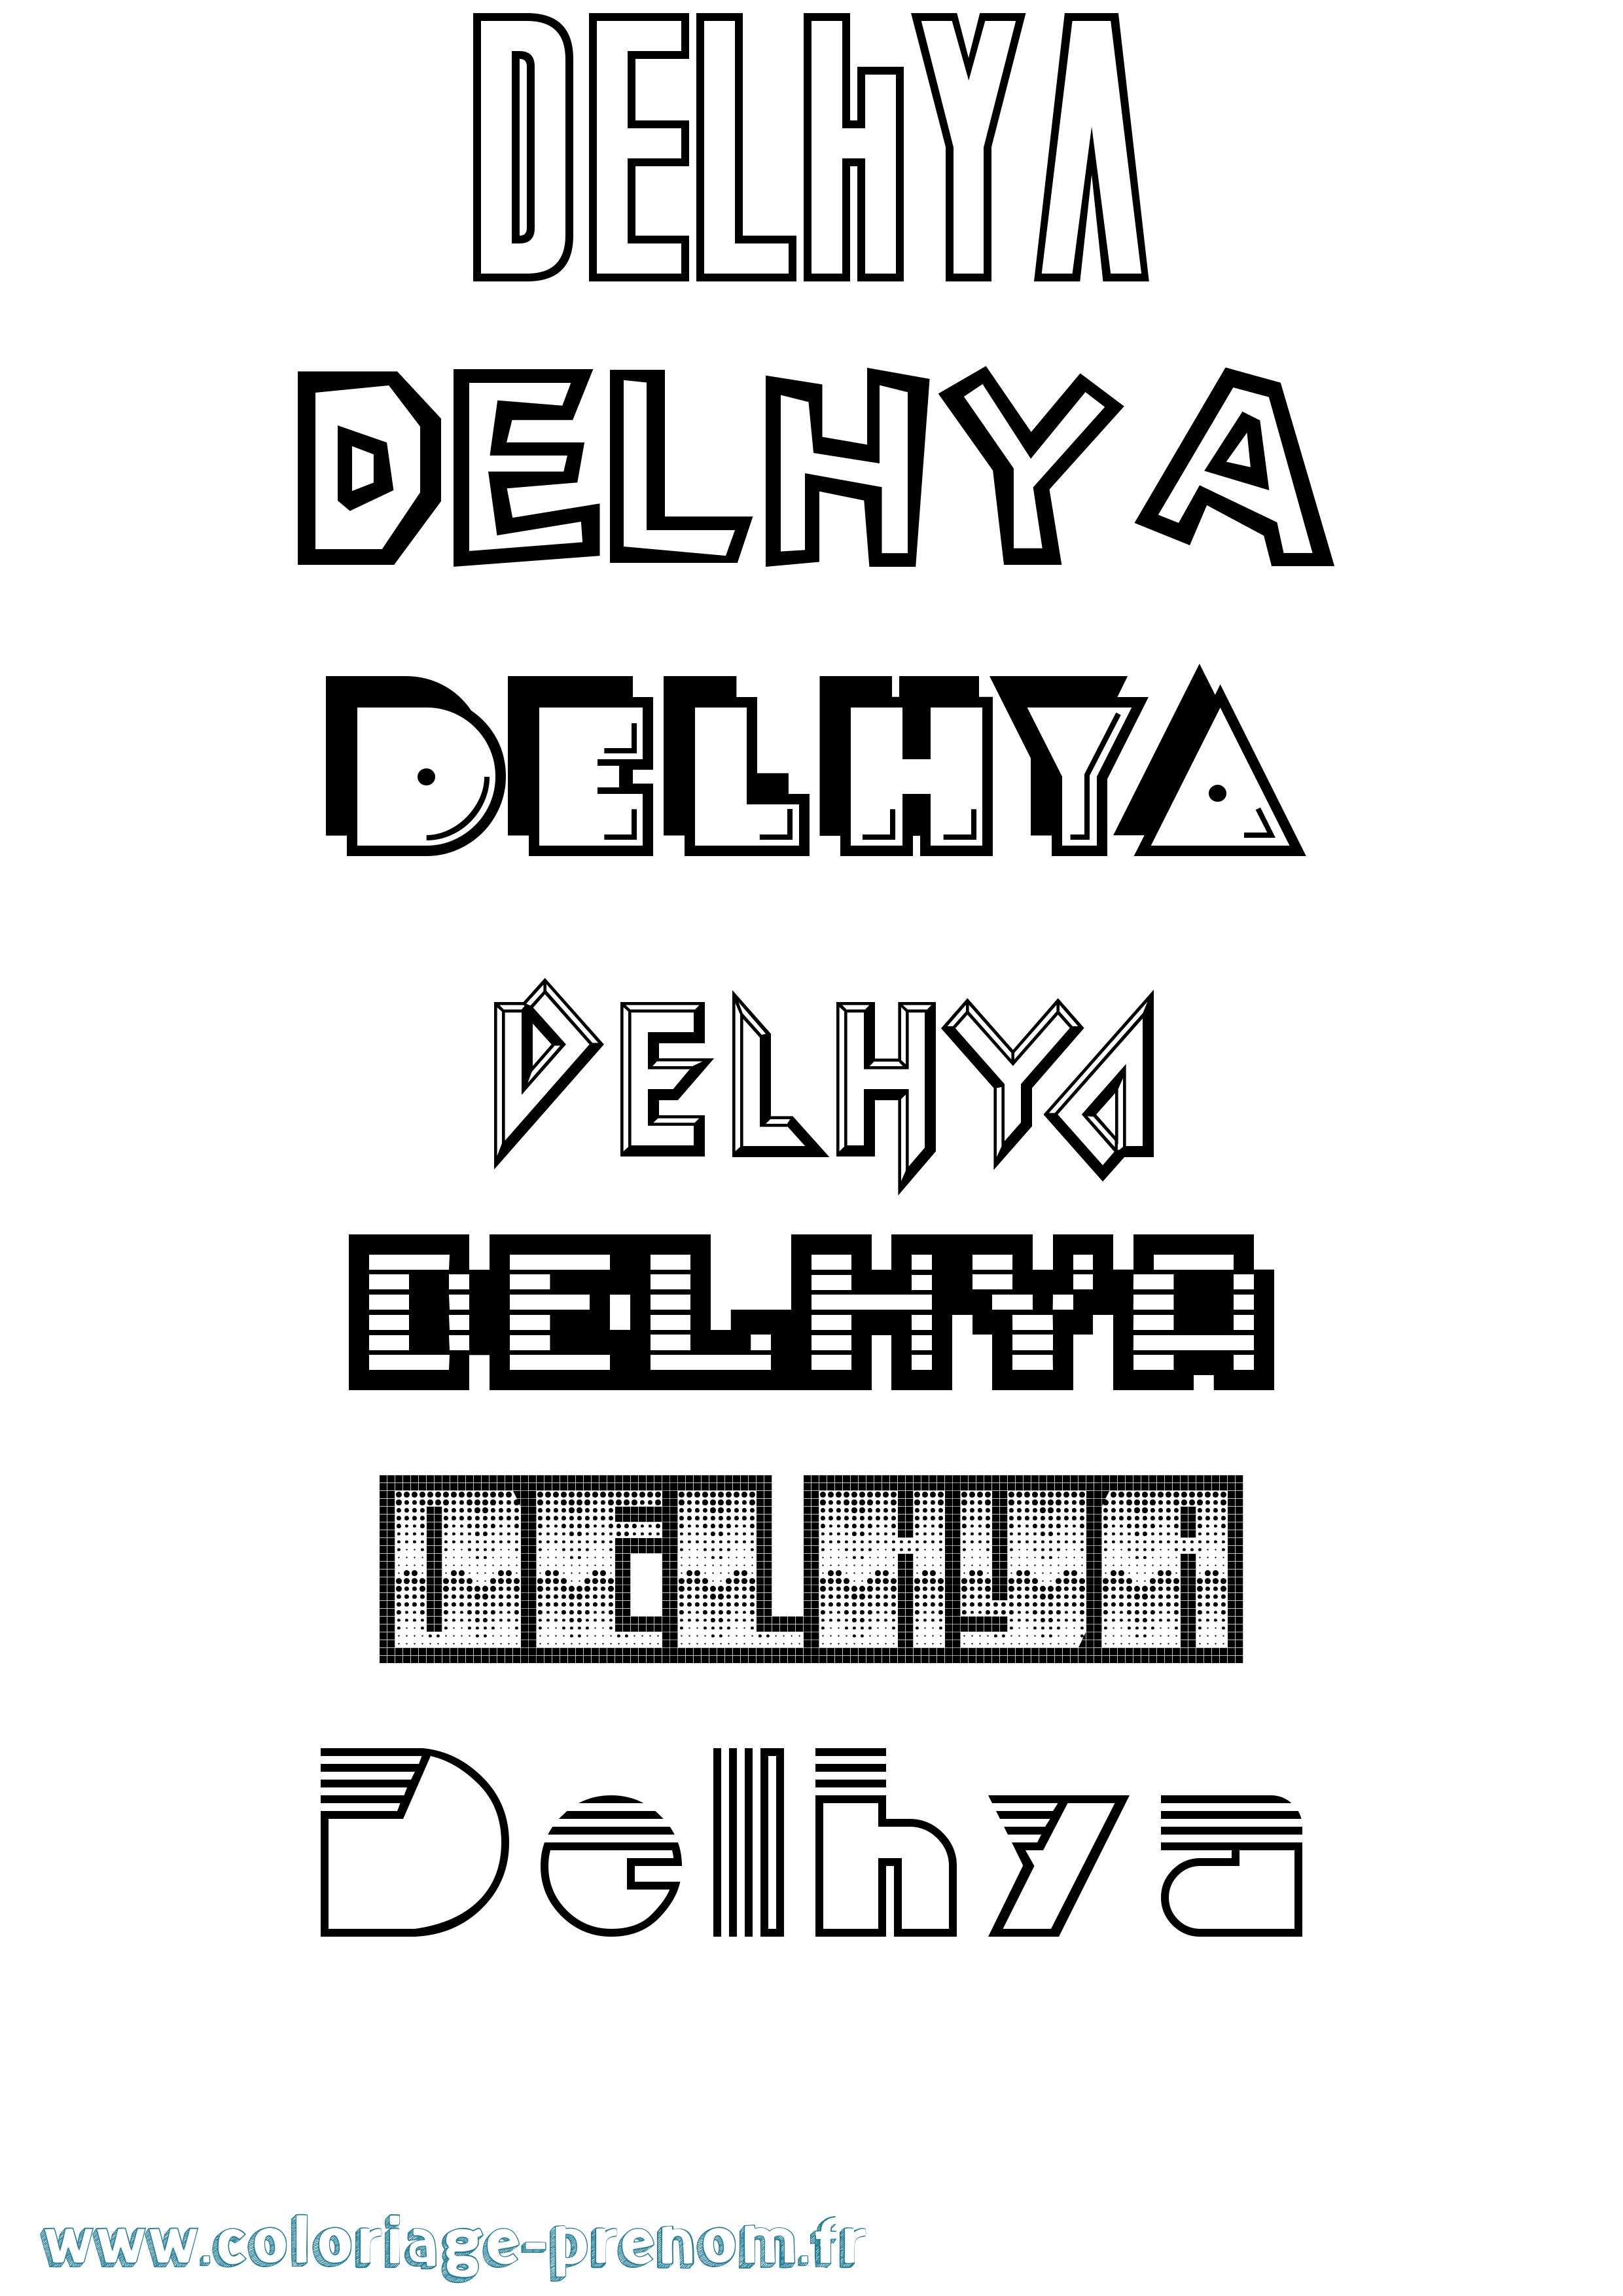 Coloriage prénom Delhya Jeux Vidéos